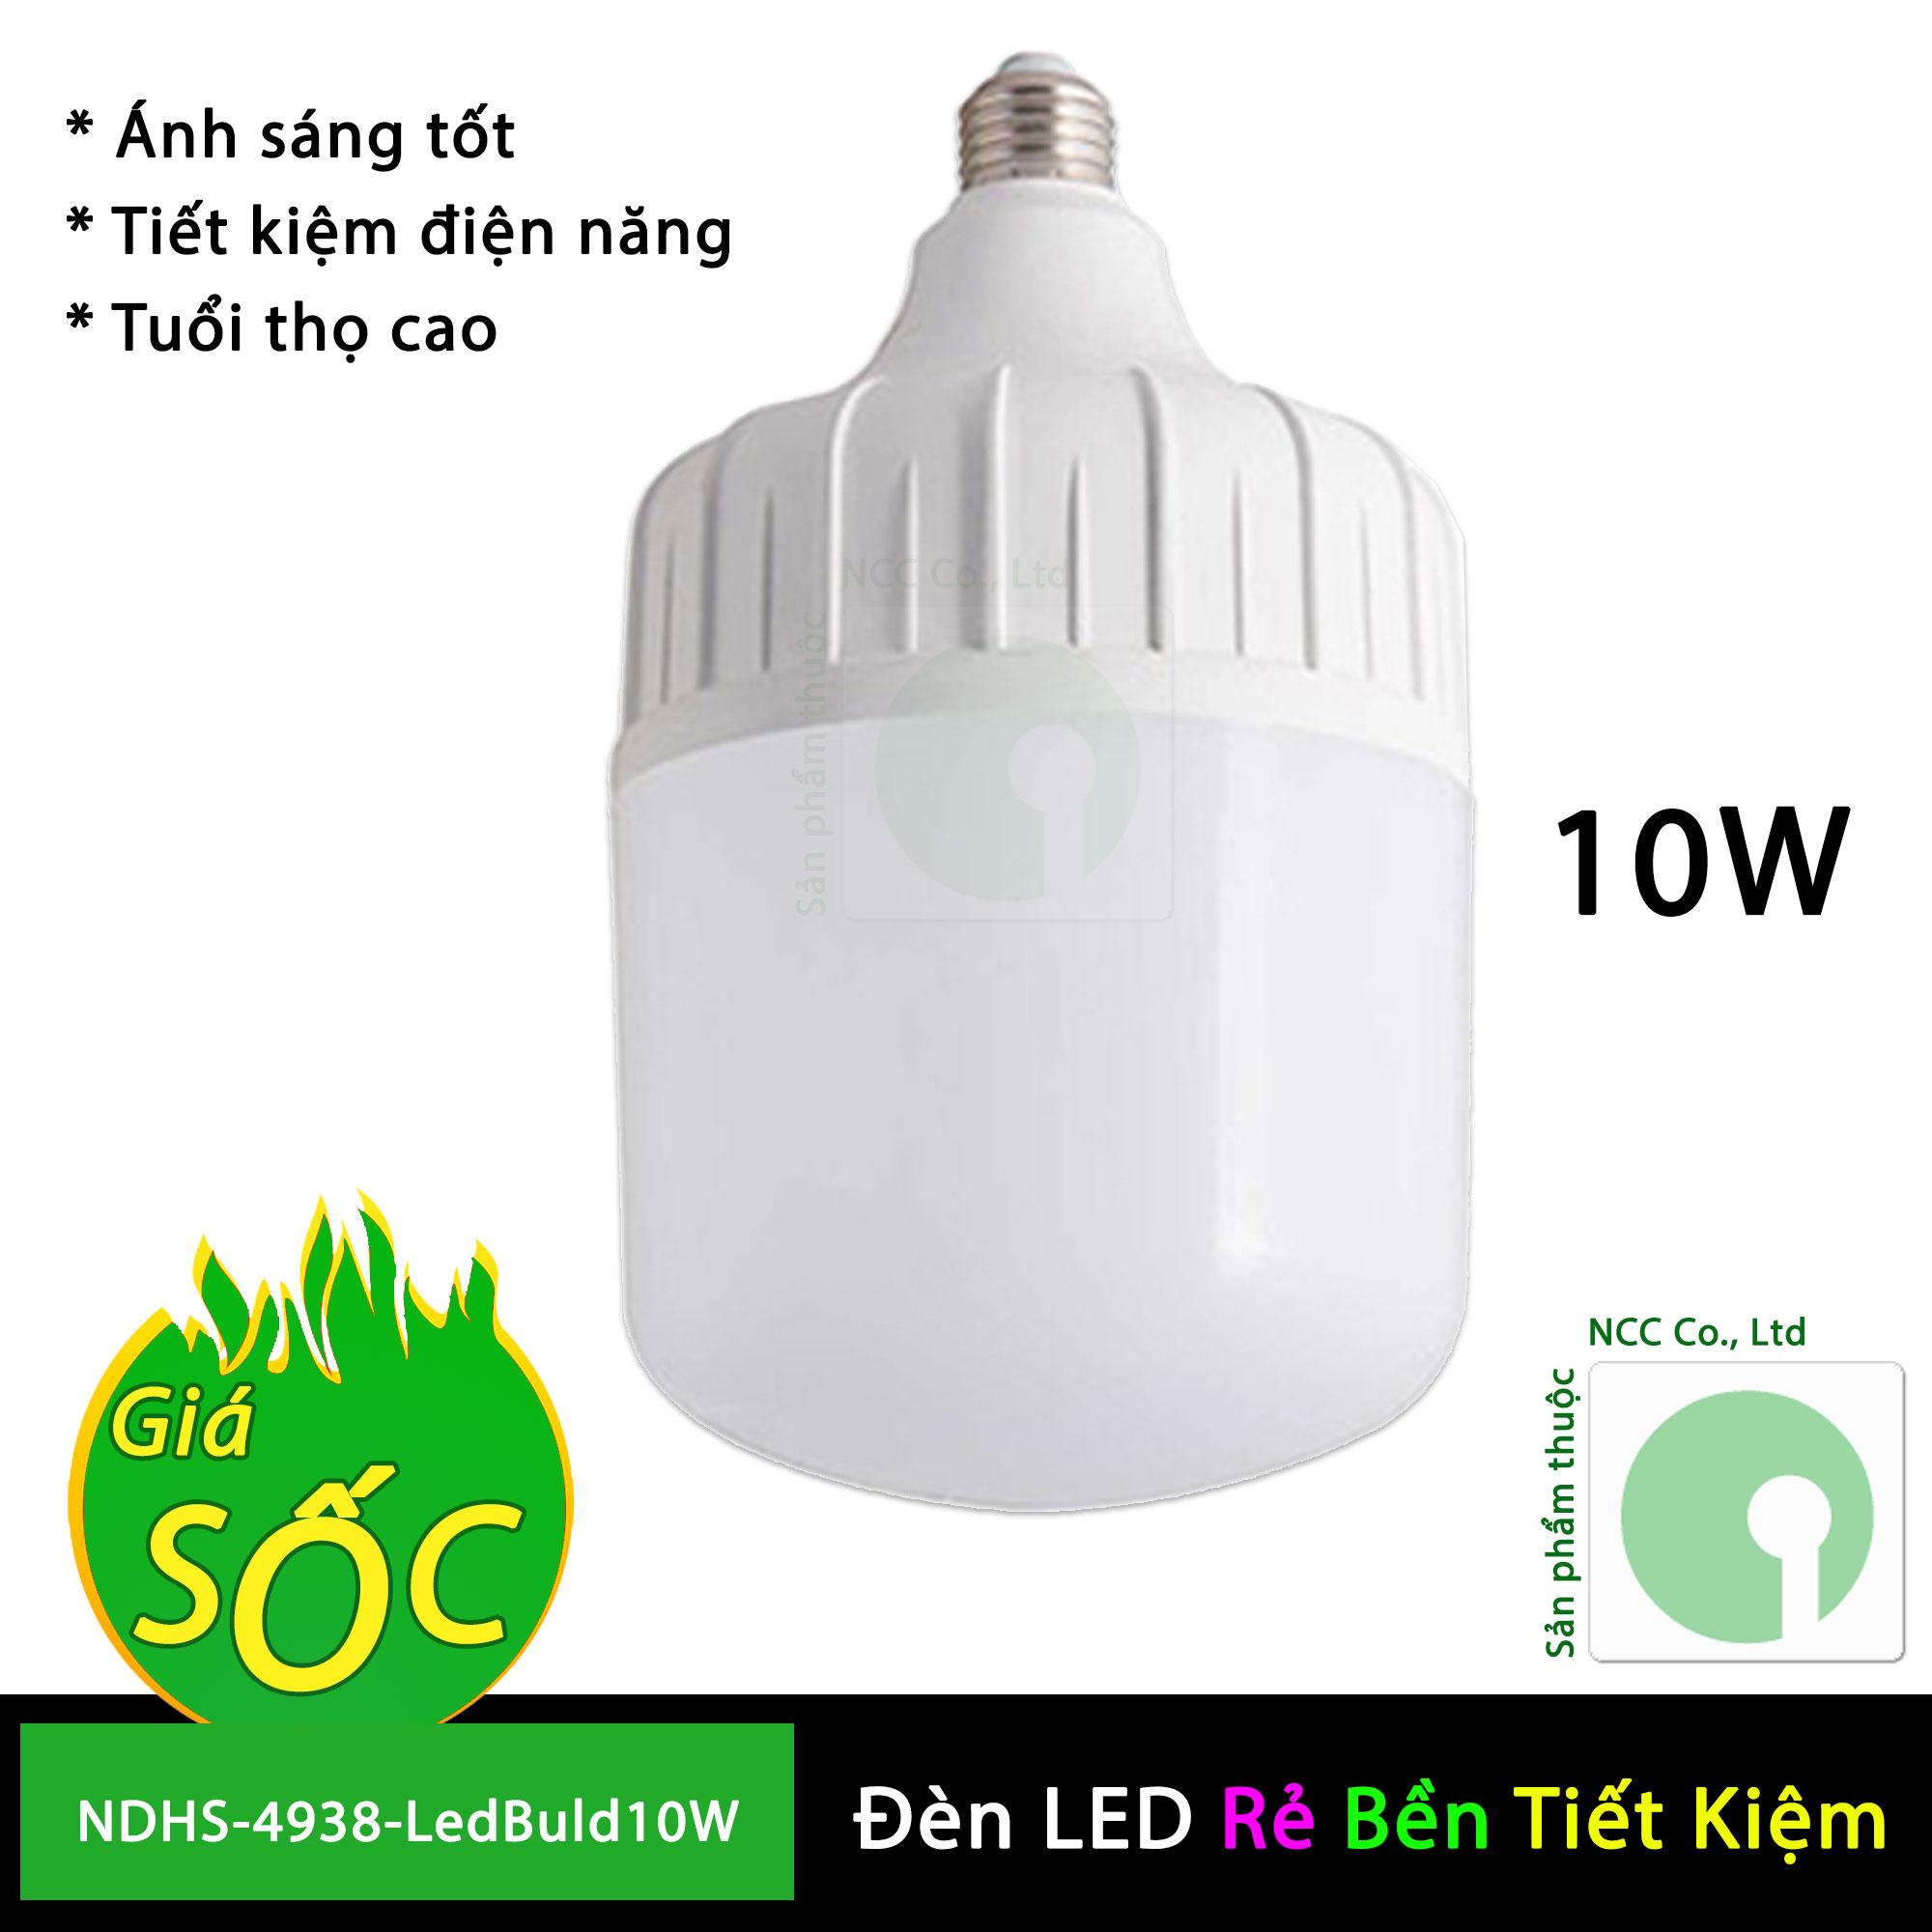 Bóng đèn Led Buld 40W - Led trụ tiết kiệm điện dành cho gia đình và công trình - NDHS-4389-LedBuld40W (Trắng)